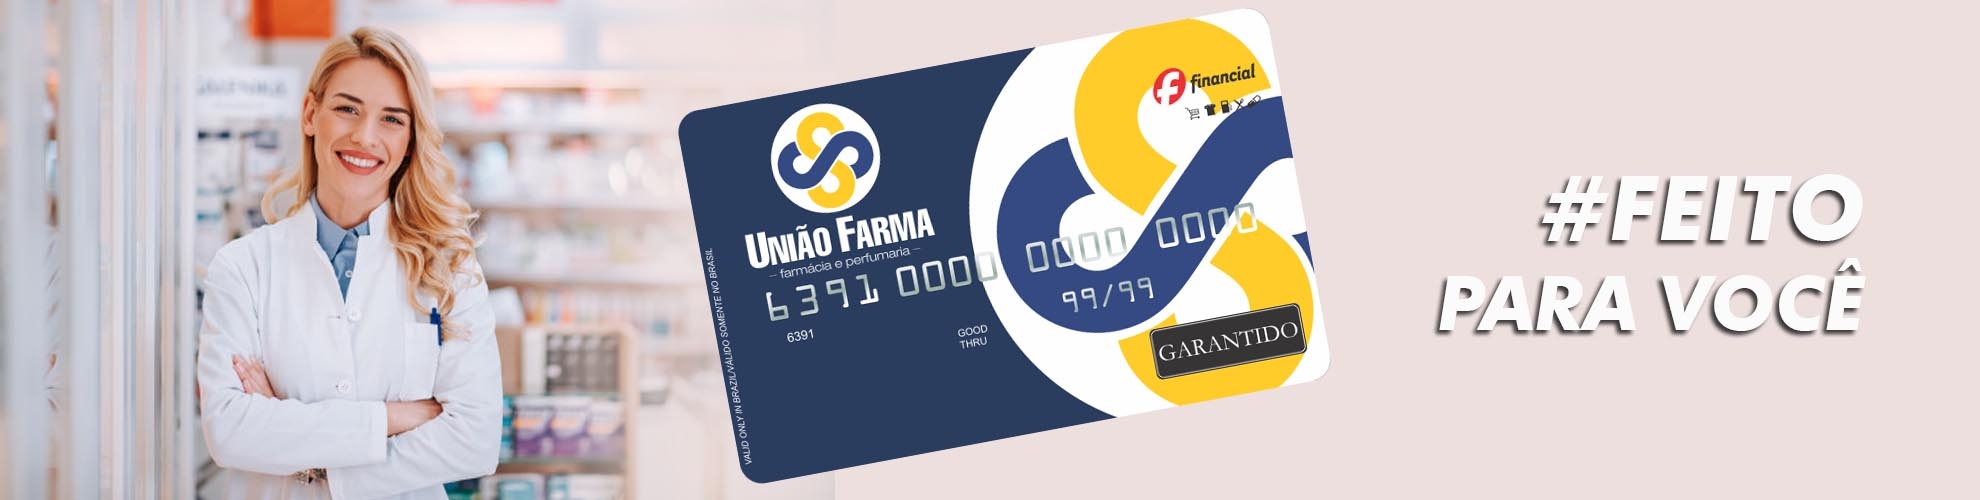 Cartão União Farma - Crédito